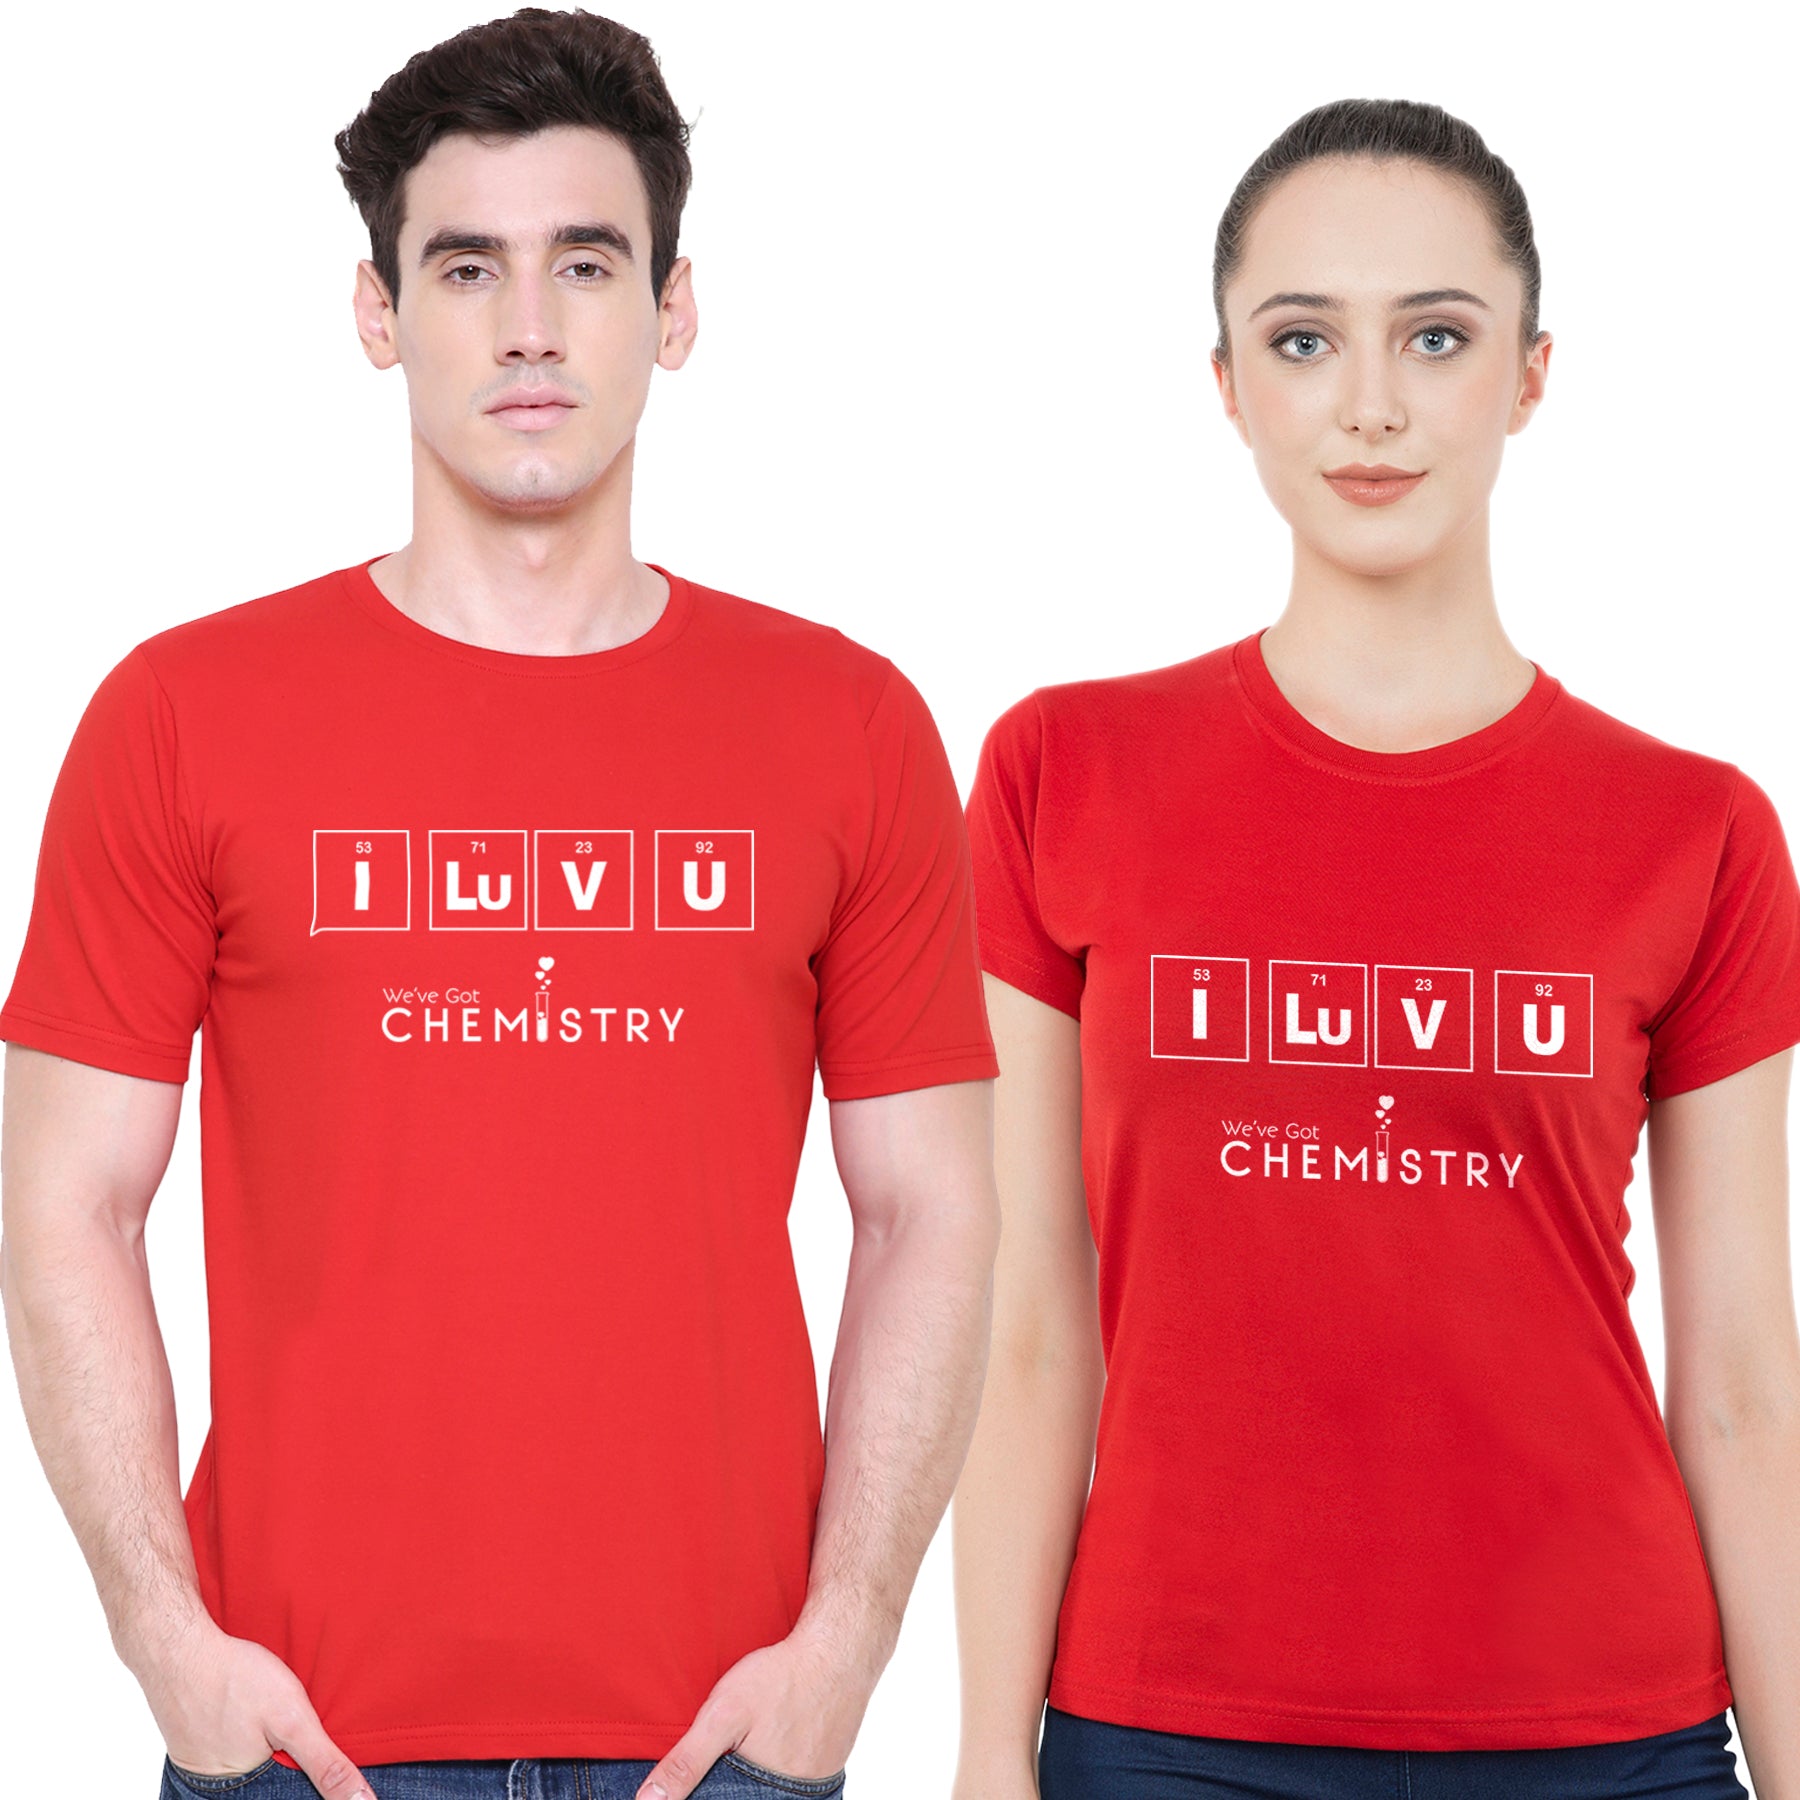 I Luv Chemistarymatching Couple T shirts- Red